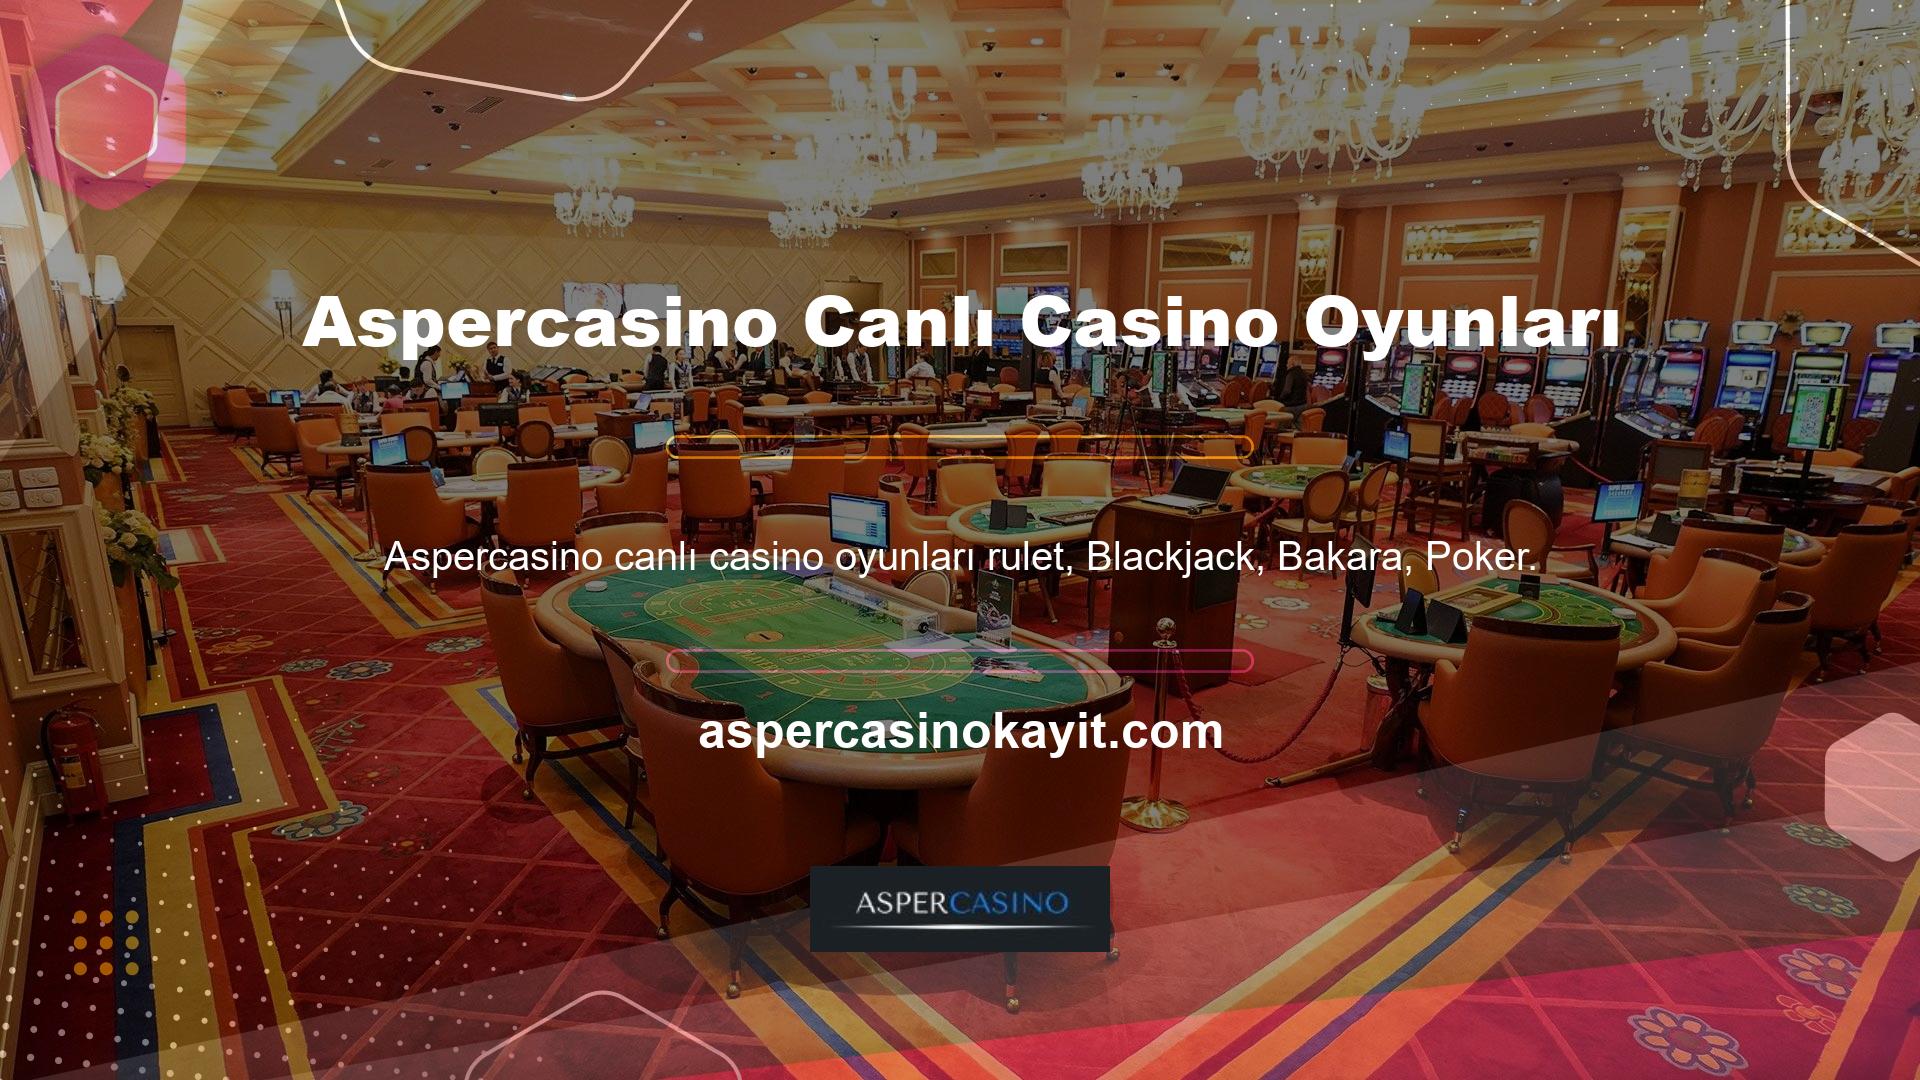 Casino siteleri ayrıca popüler oyunlar ve oyun şovları sunar